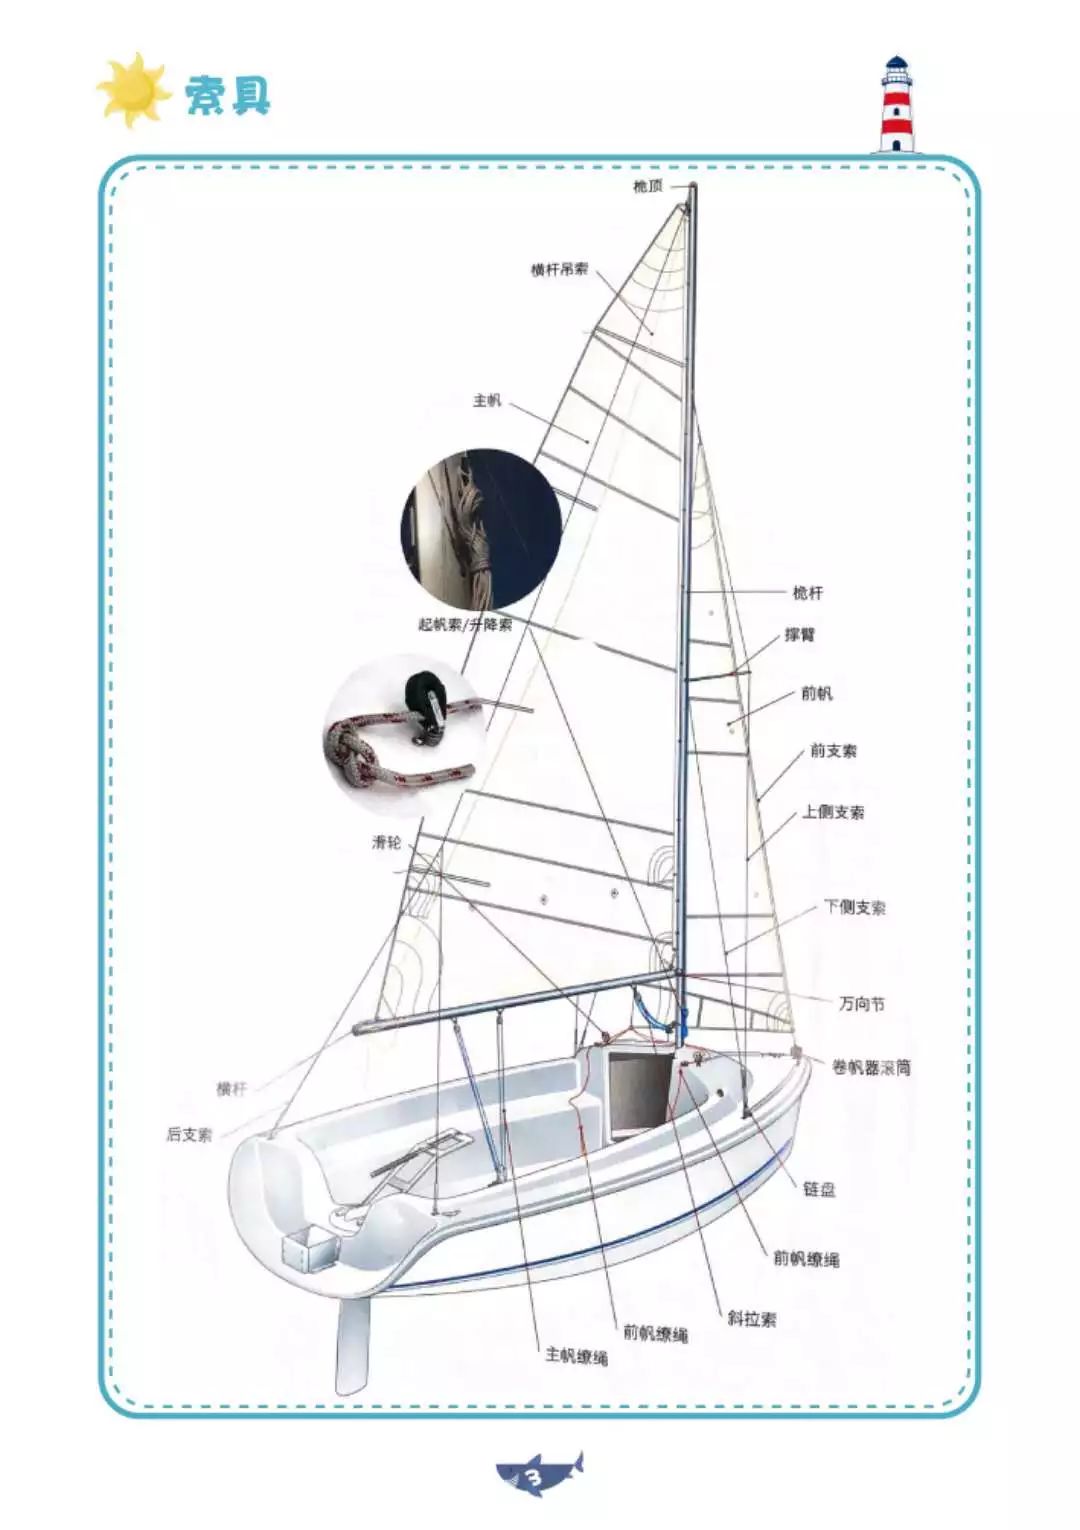 三桅帆船解剖图图片